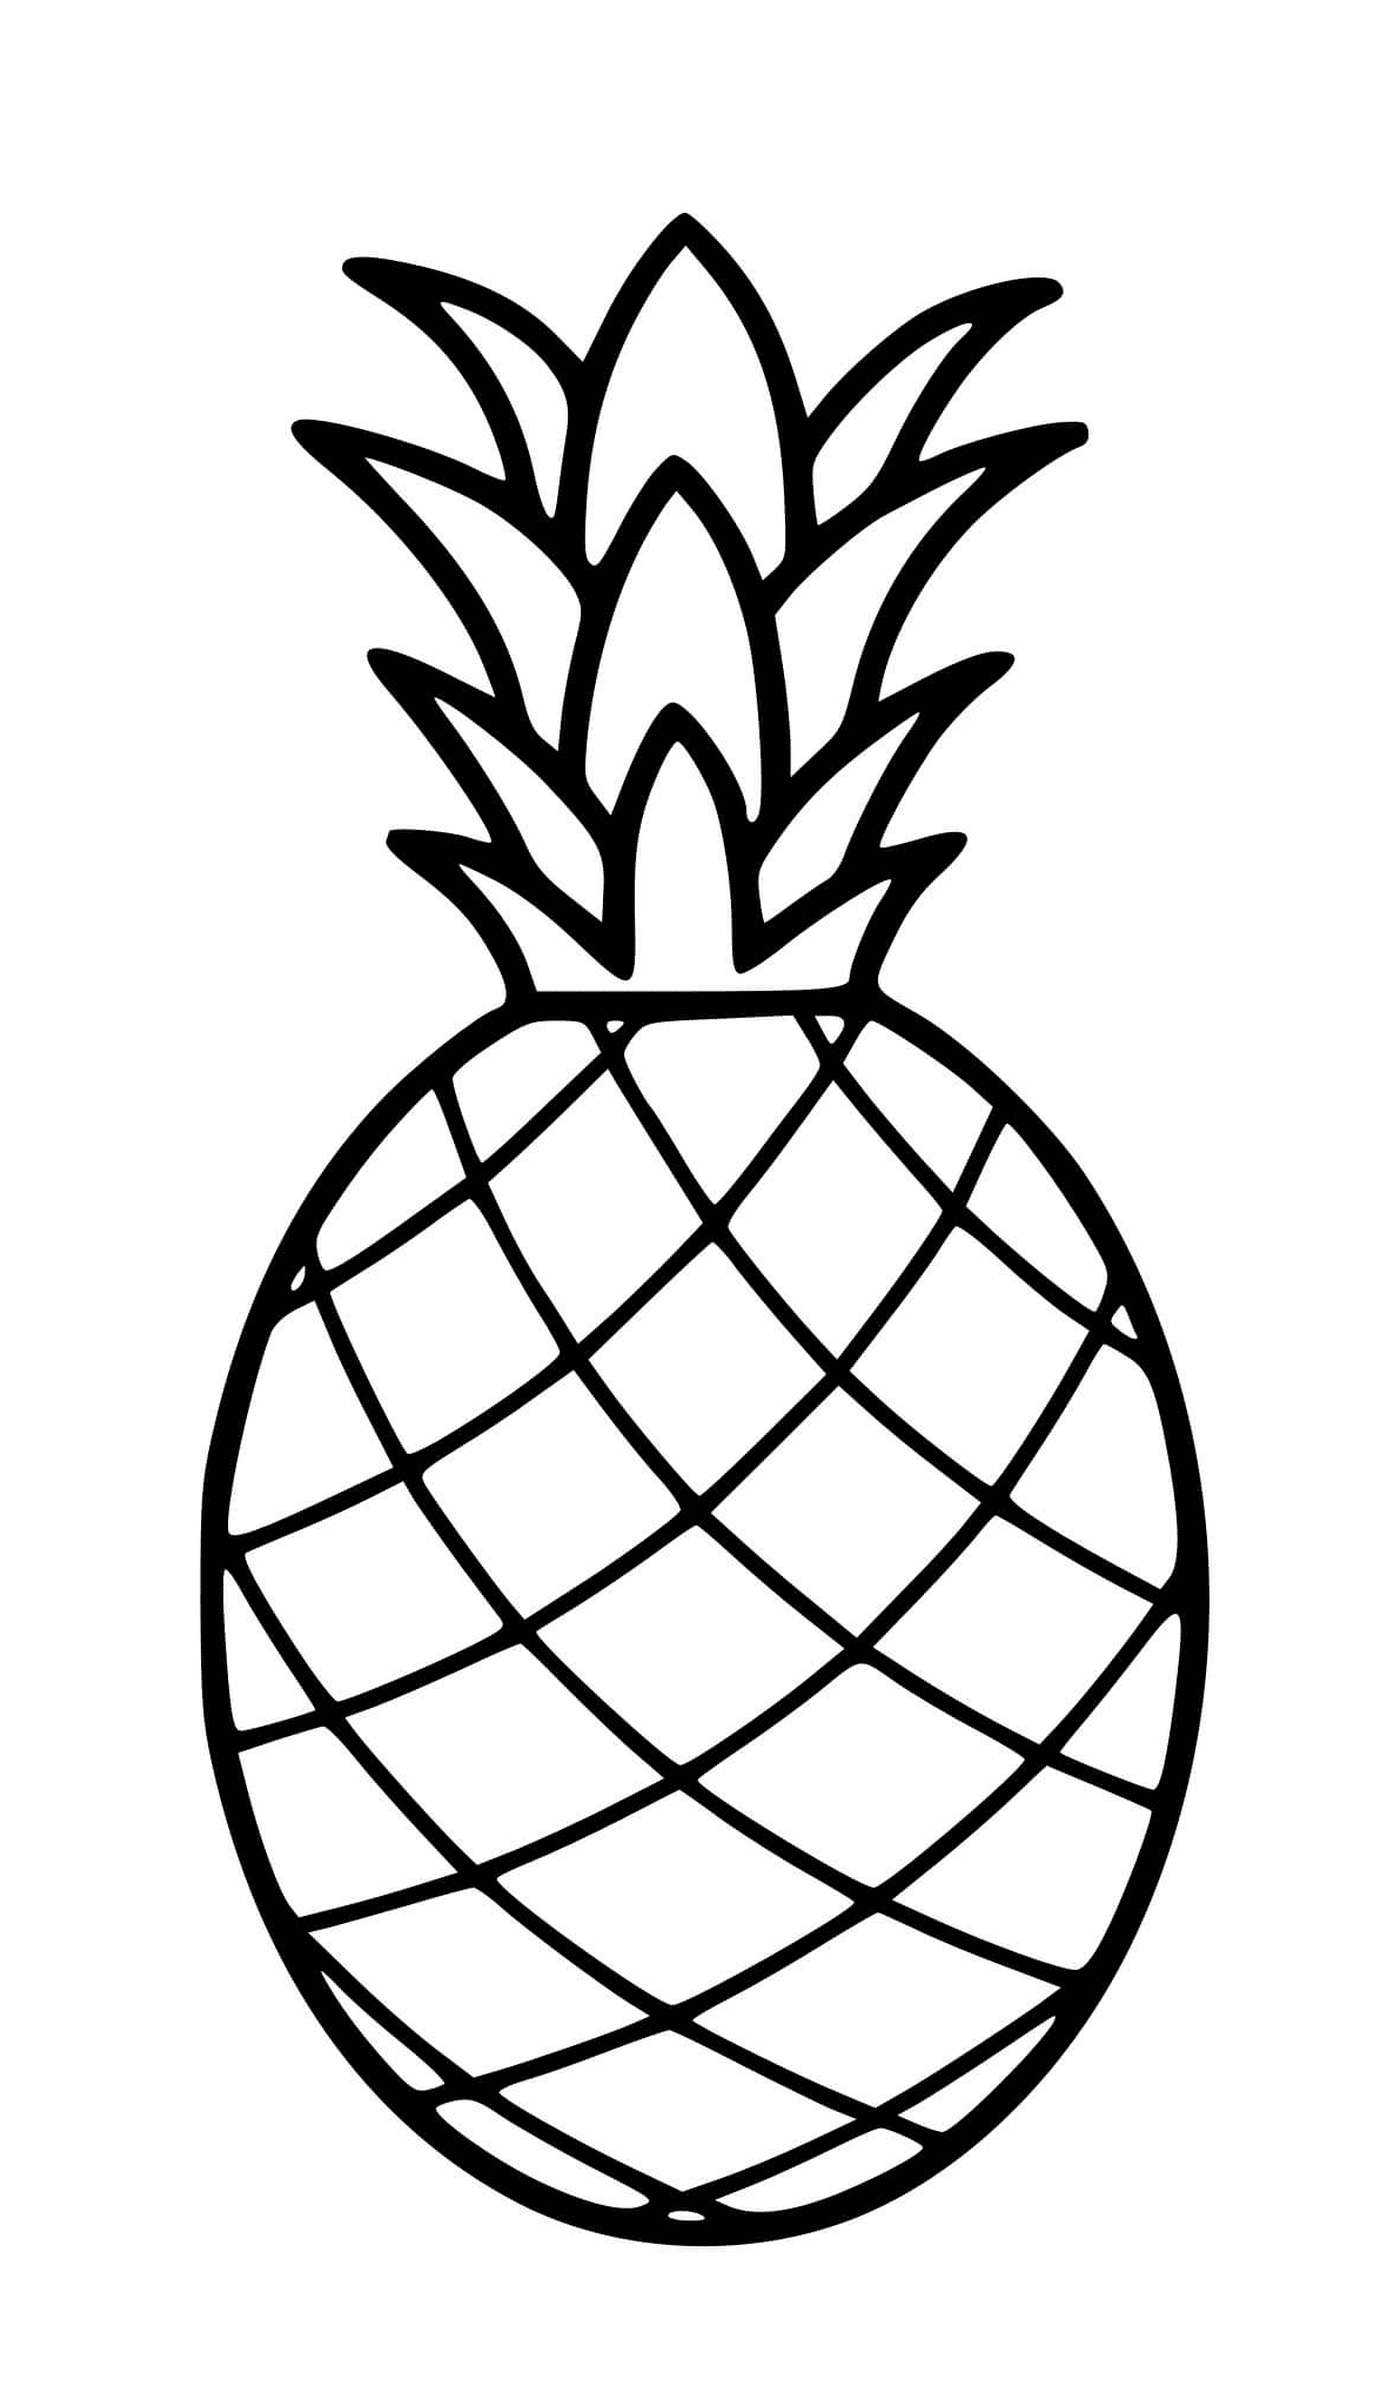   Un ananas dessiné avec réalisme 